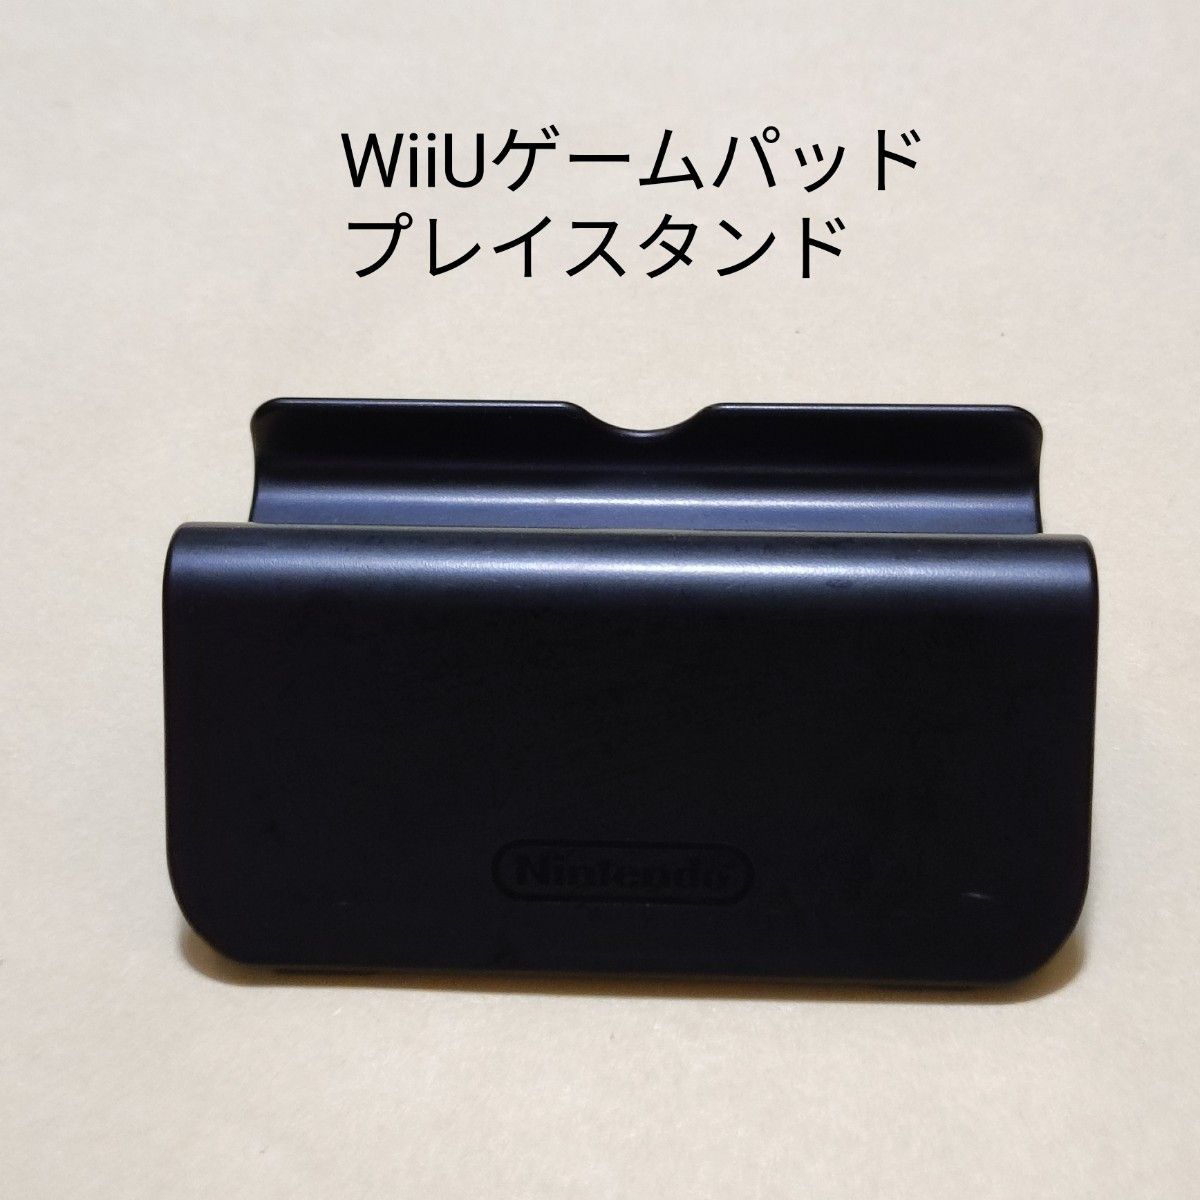 Wii U 本体 GamePad プレイスタンド のみ ゲームパッド WiiU